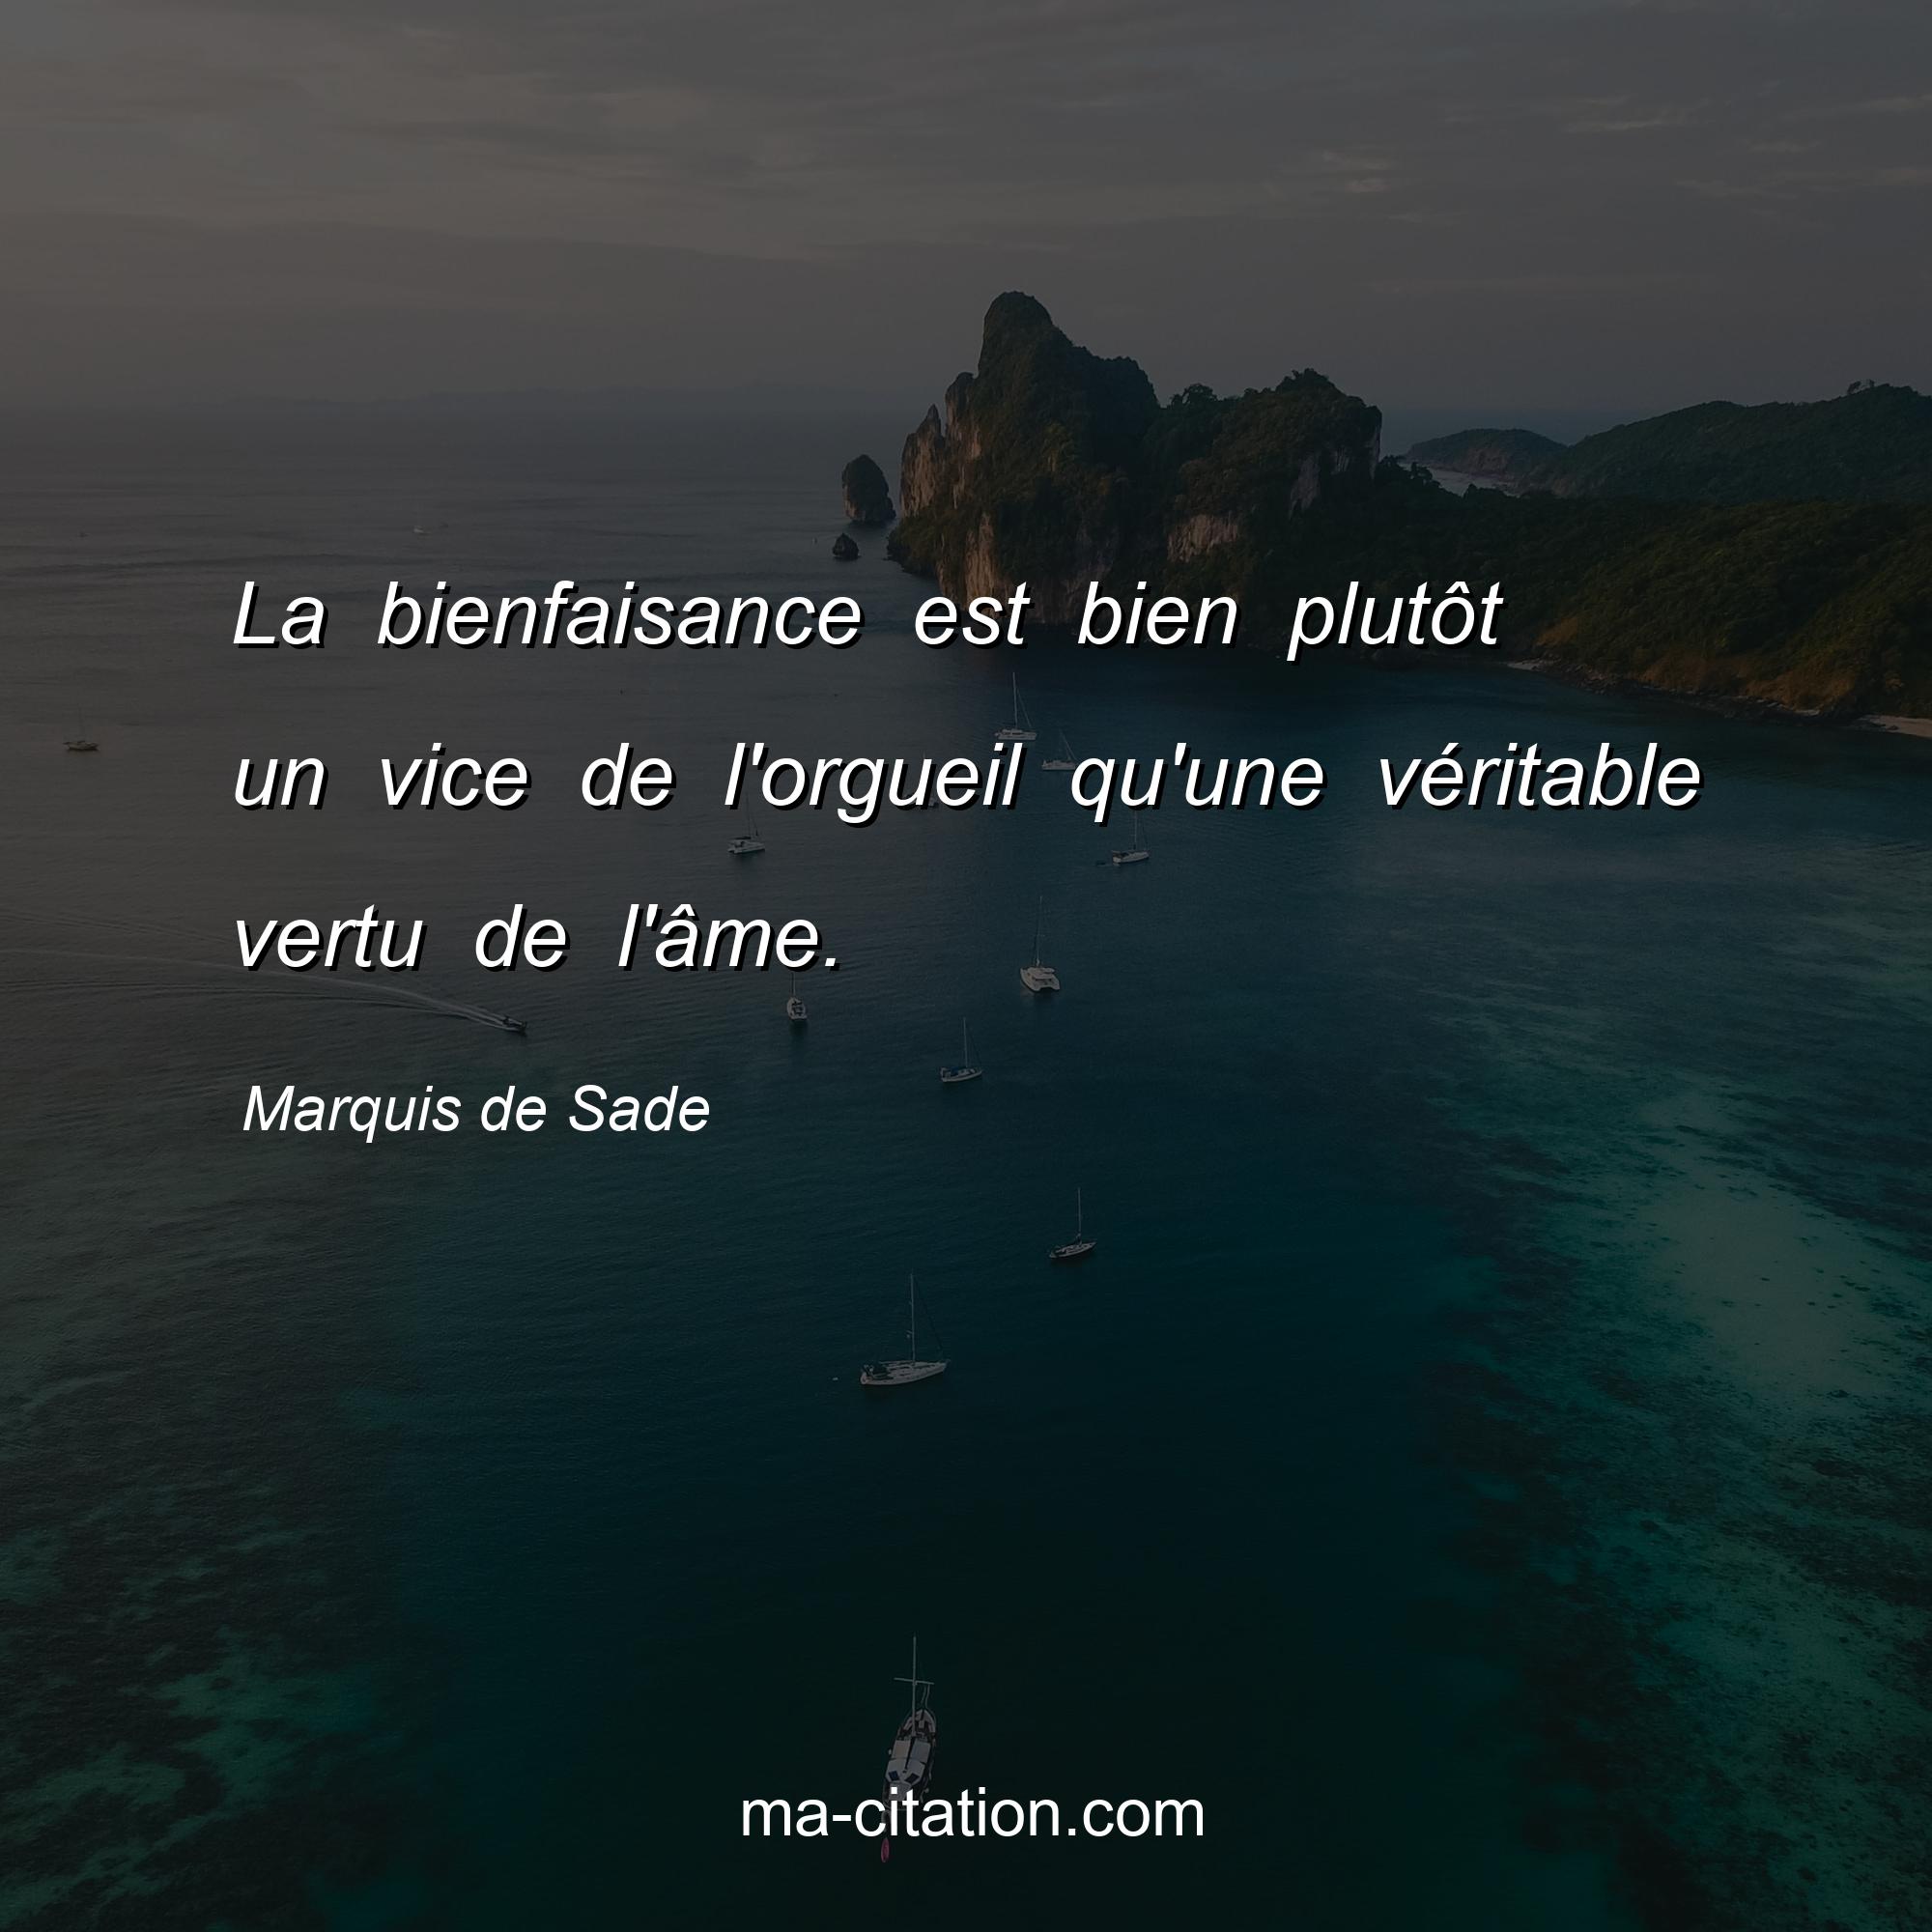 Marquis de Sade : La bienfaisance est bien plutôt un vice de l'orgueil qu'une véritable vertu de l'âme.